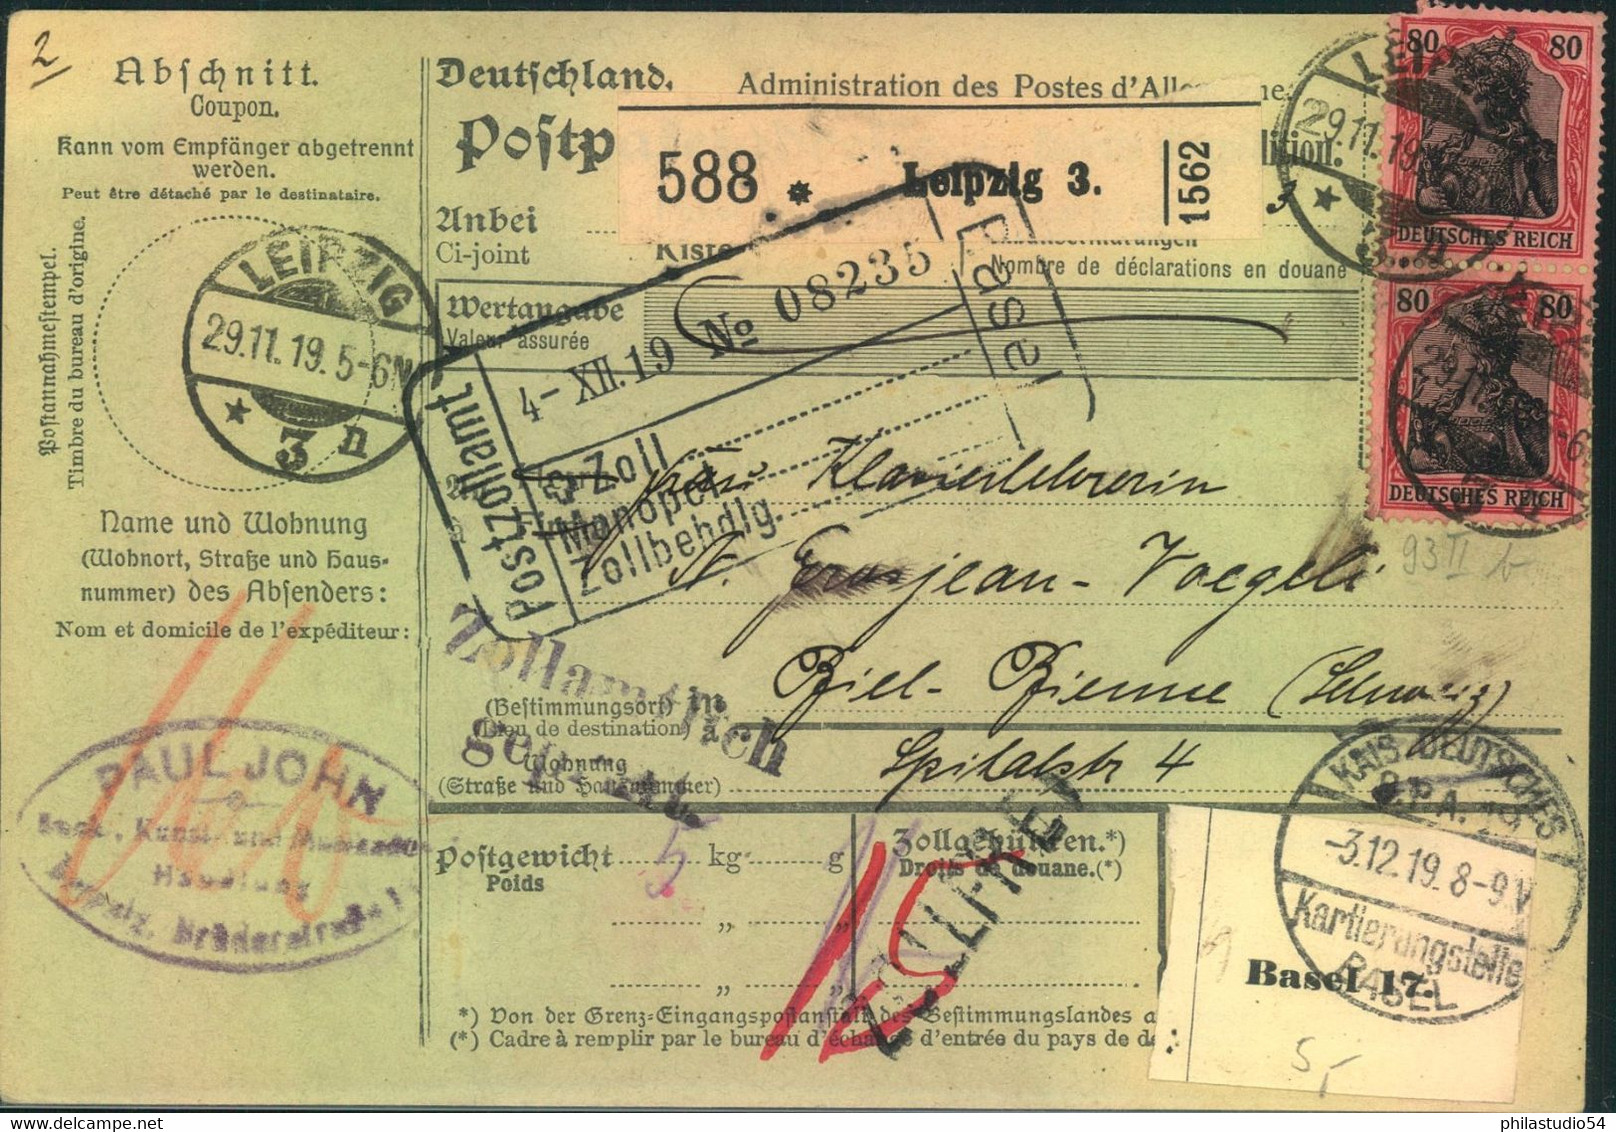 1919, 80 Pfg. Germania Im Senkrechten Paar Auf Paletkarte Ab LEIPZIG 3 In Die Schweiz - Briefe U. Dokumente